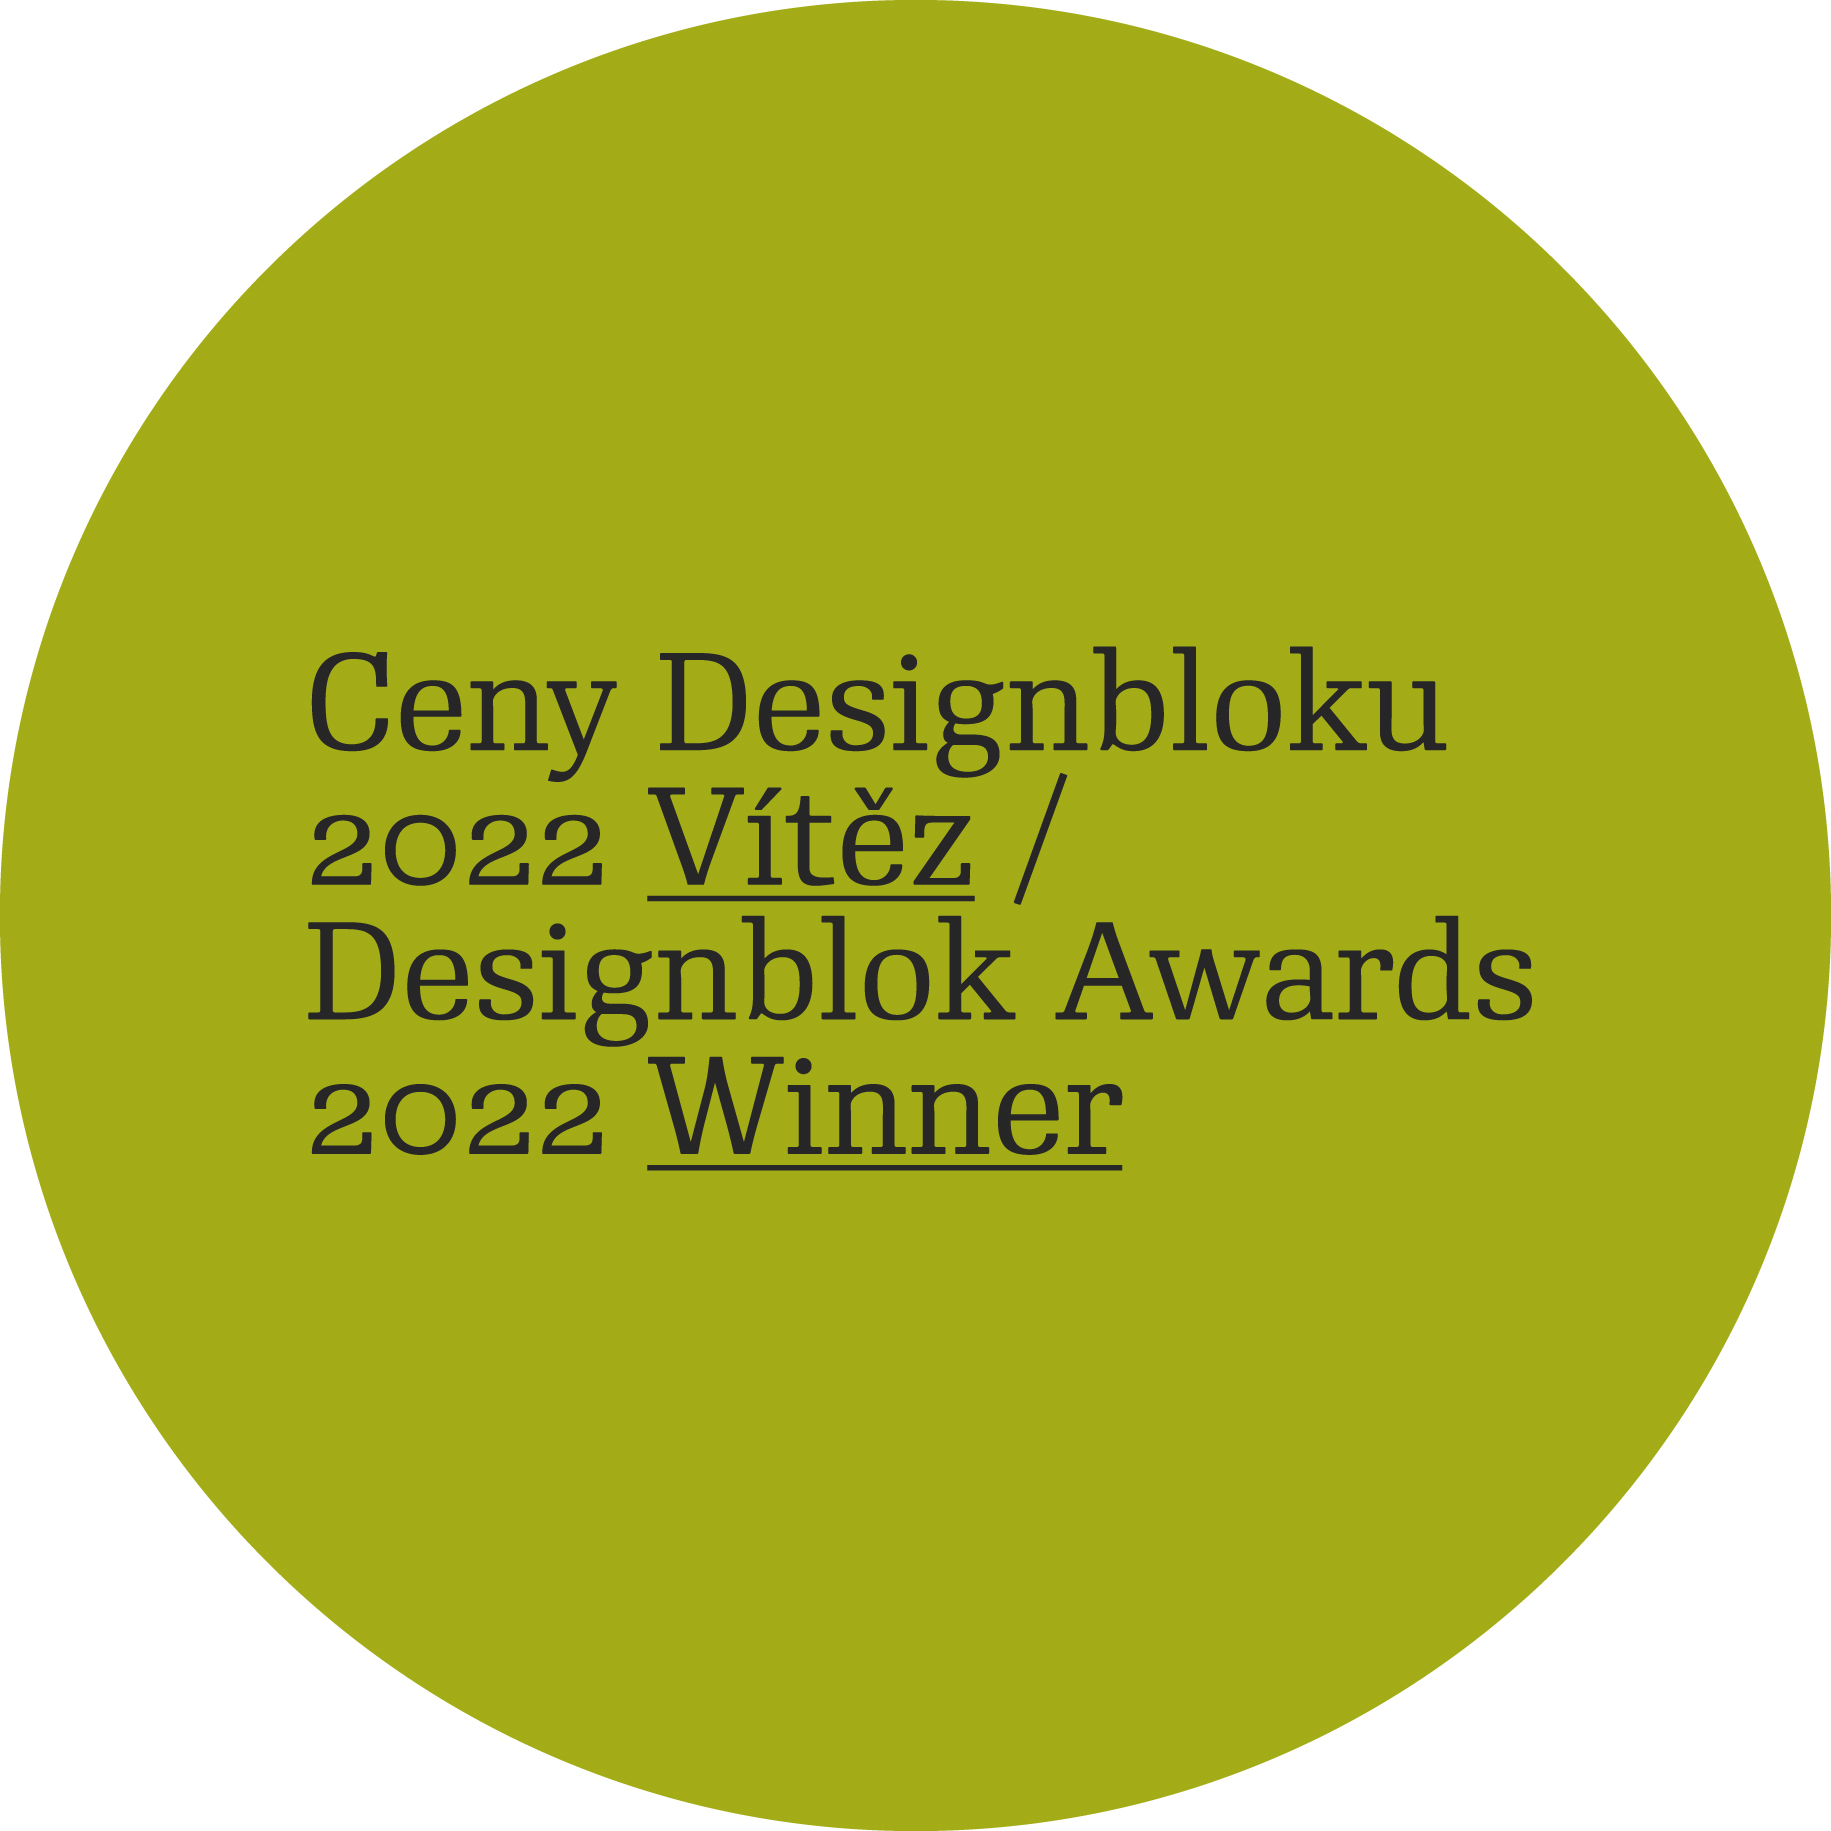 Ceny Designbloku 2022 Vítěz